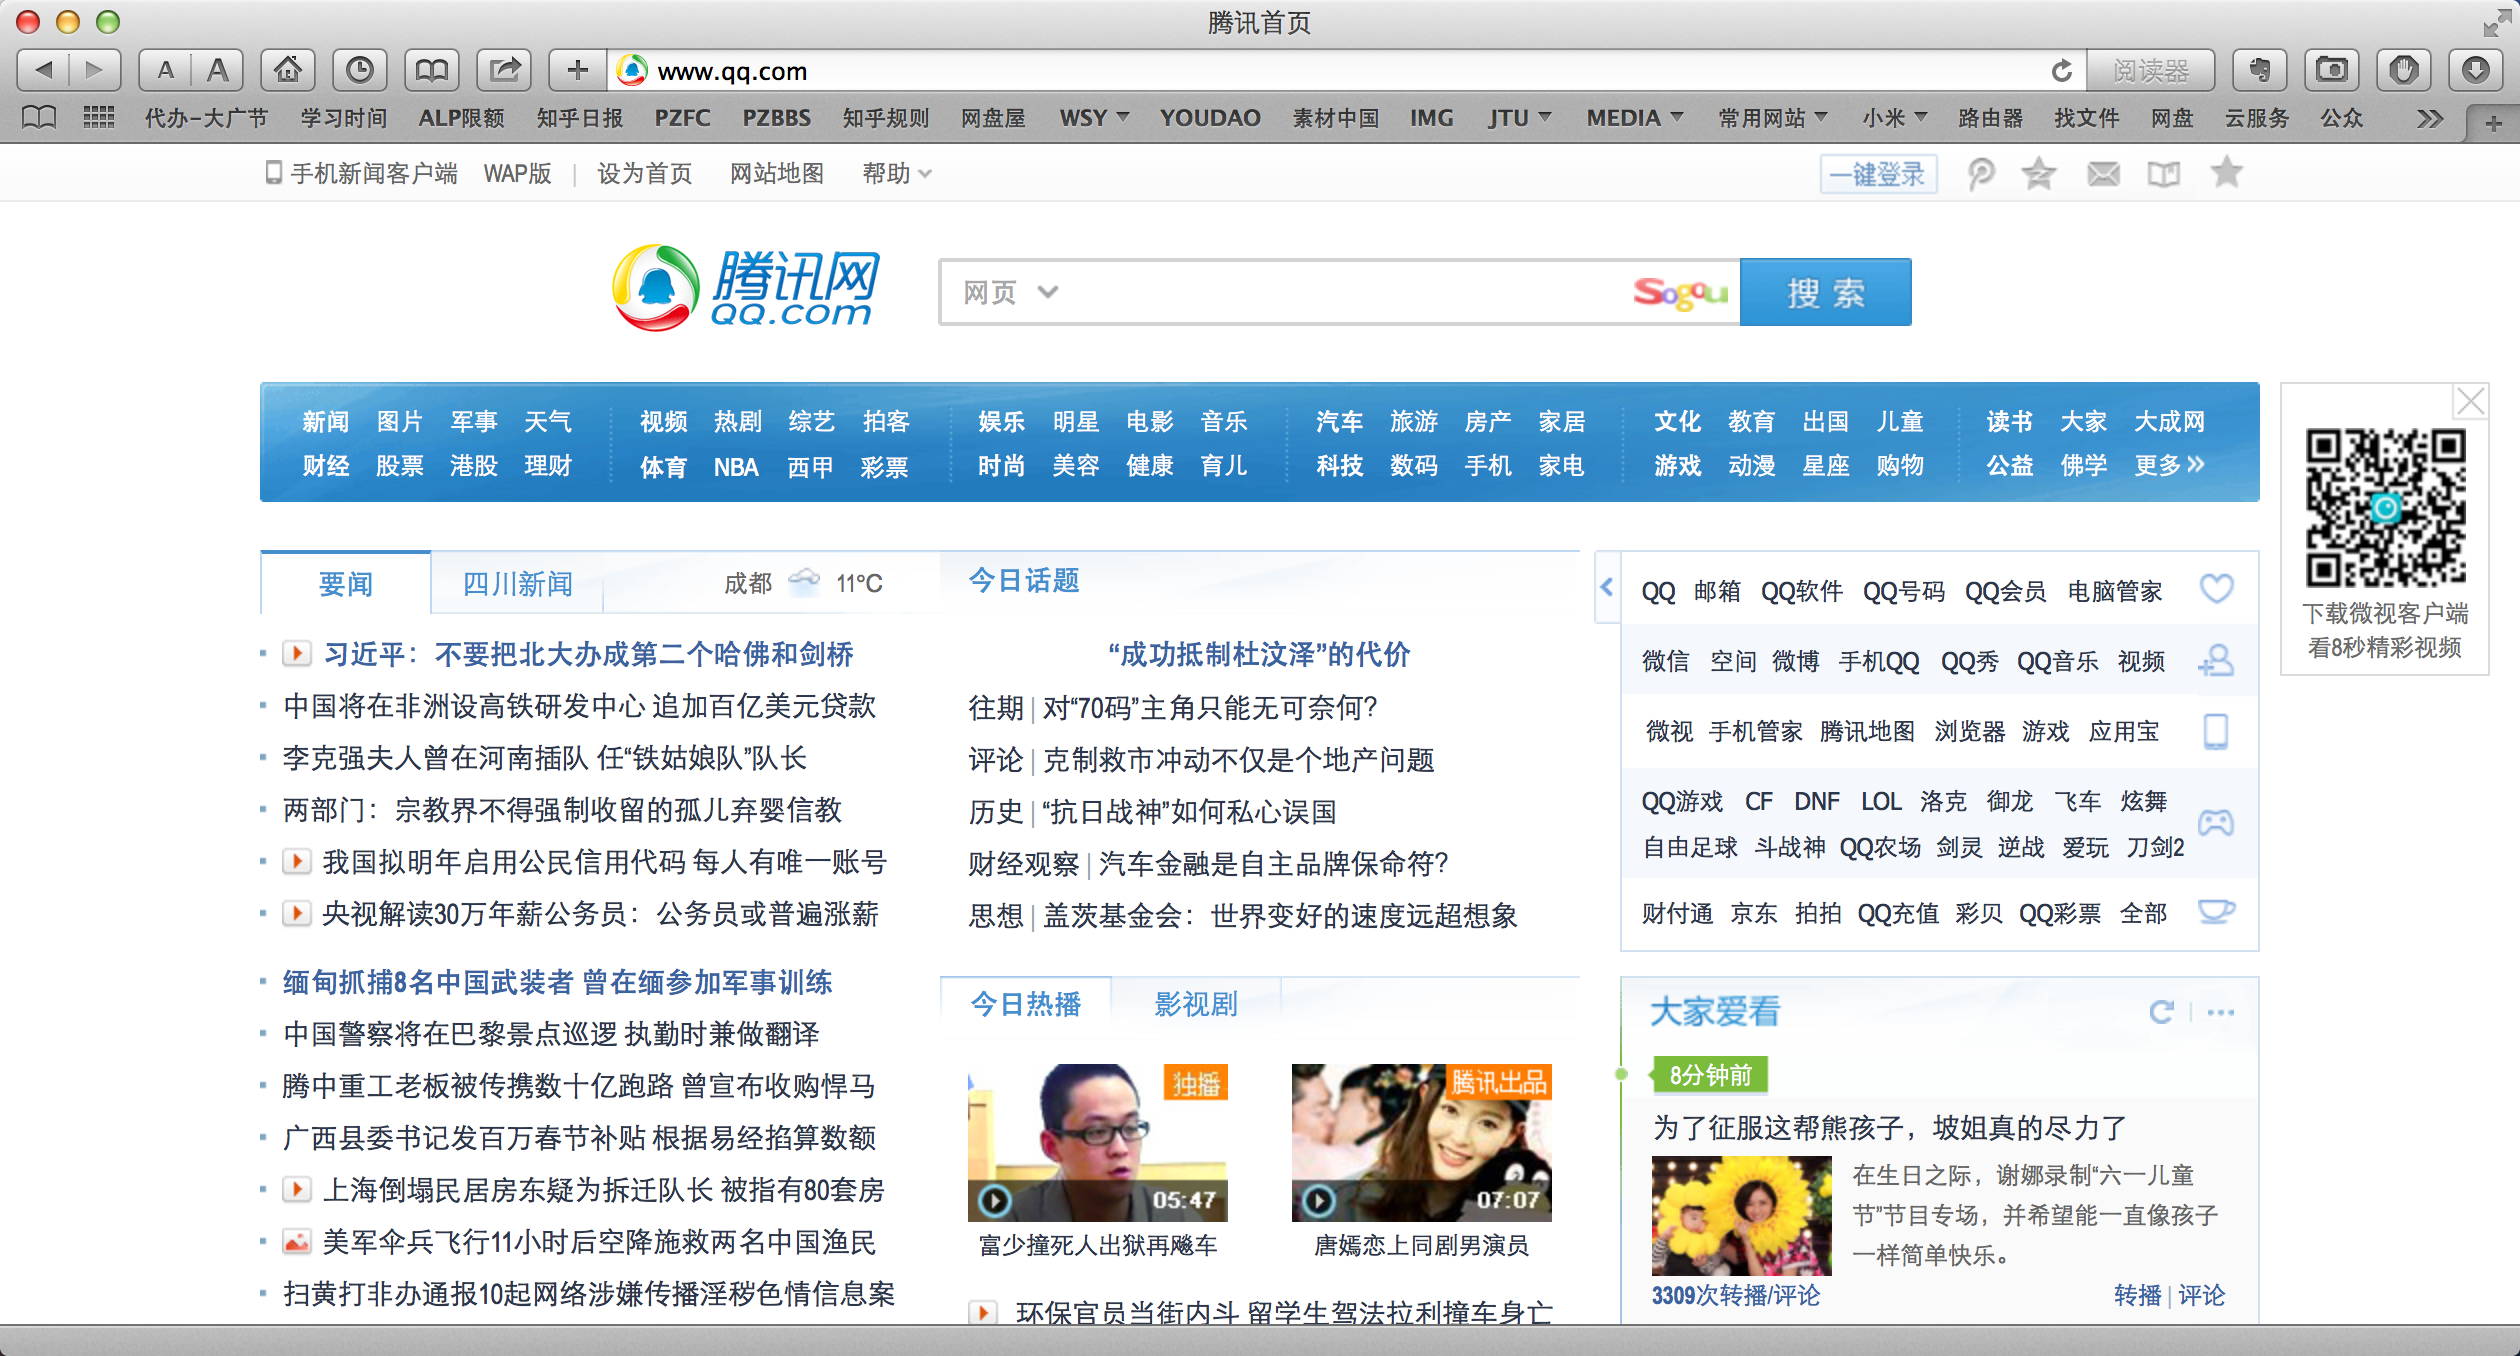 截止到2014年4月,四大门户网站中,为什么搜狐首页相对